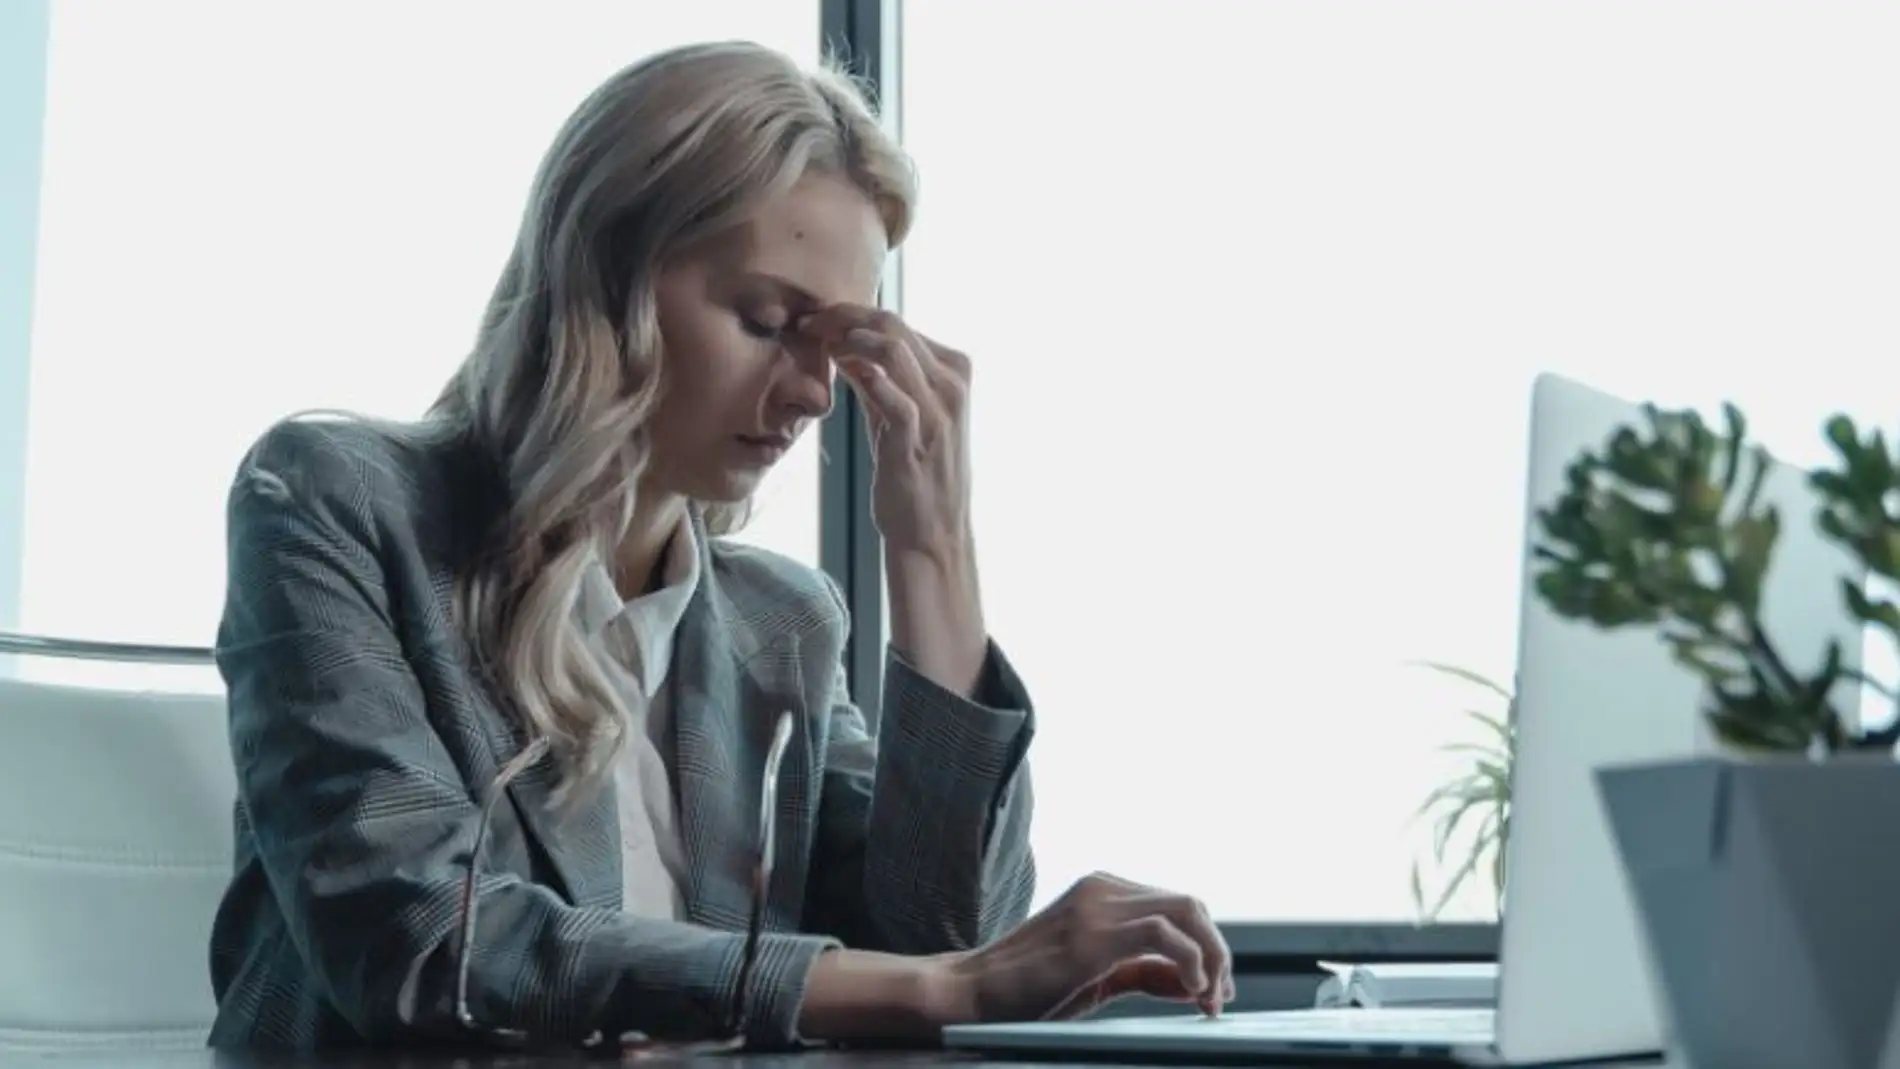 Cigna lanza una campaña para prevenir el estrés laboral